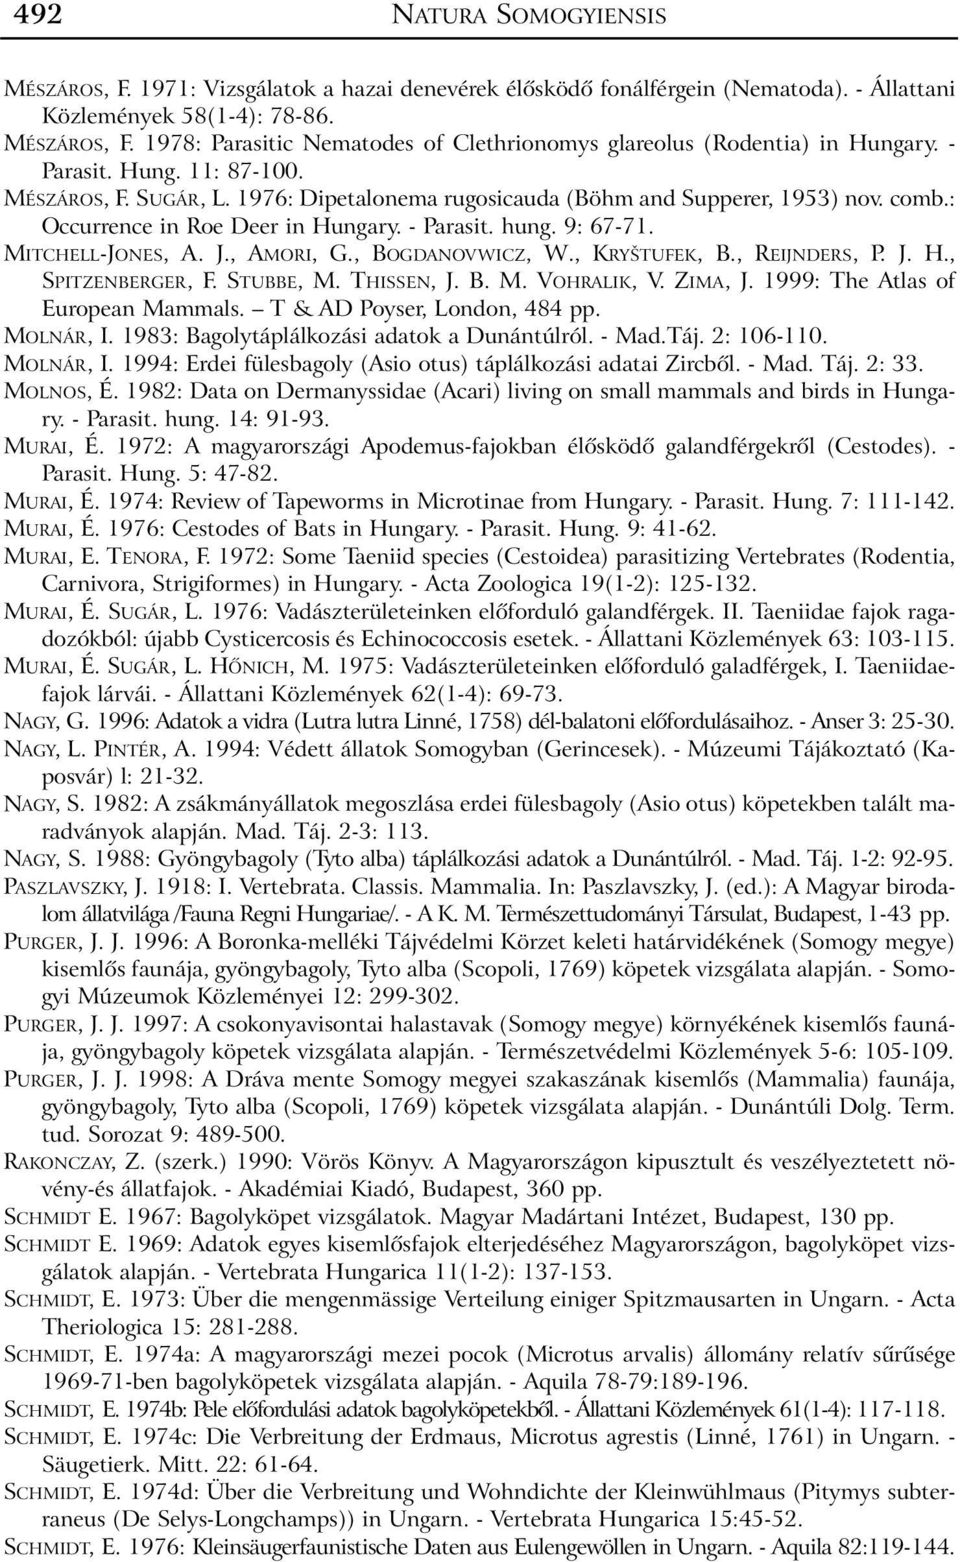 MITCHELL-JONES, A. J., AMORI, G., BOGDANOVWICZ, W., KRYŠTUFEK, B., REIJNDERS, P. J. H., SPITZENBERGER, F. STUBBE, M. THISSEN, J. B. M. VOHRALIK, V. ZIMA, J. 1999: The Atlas of European Mammals.